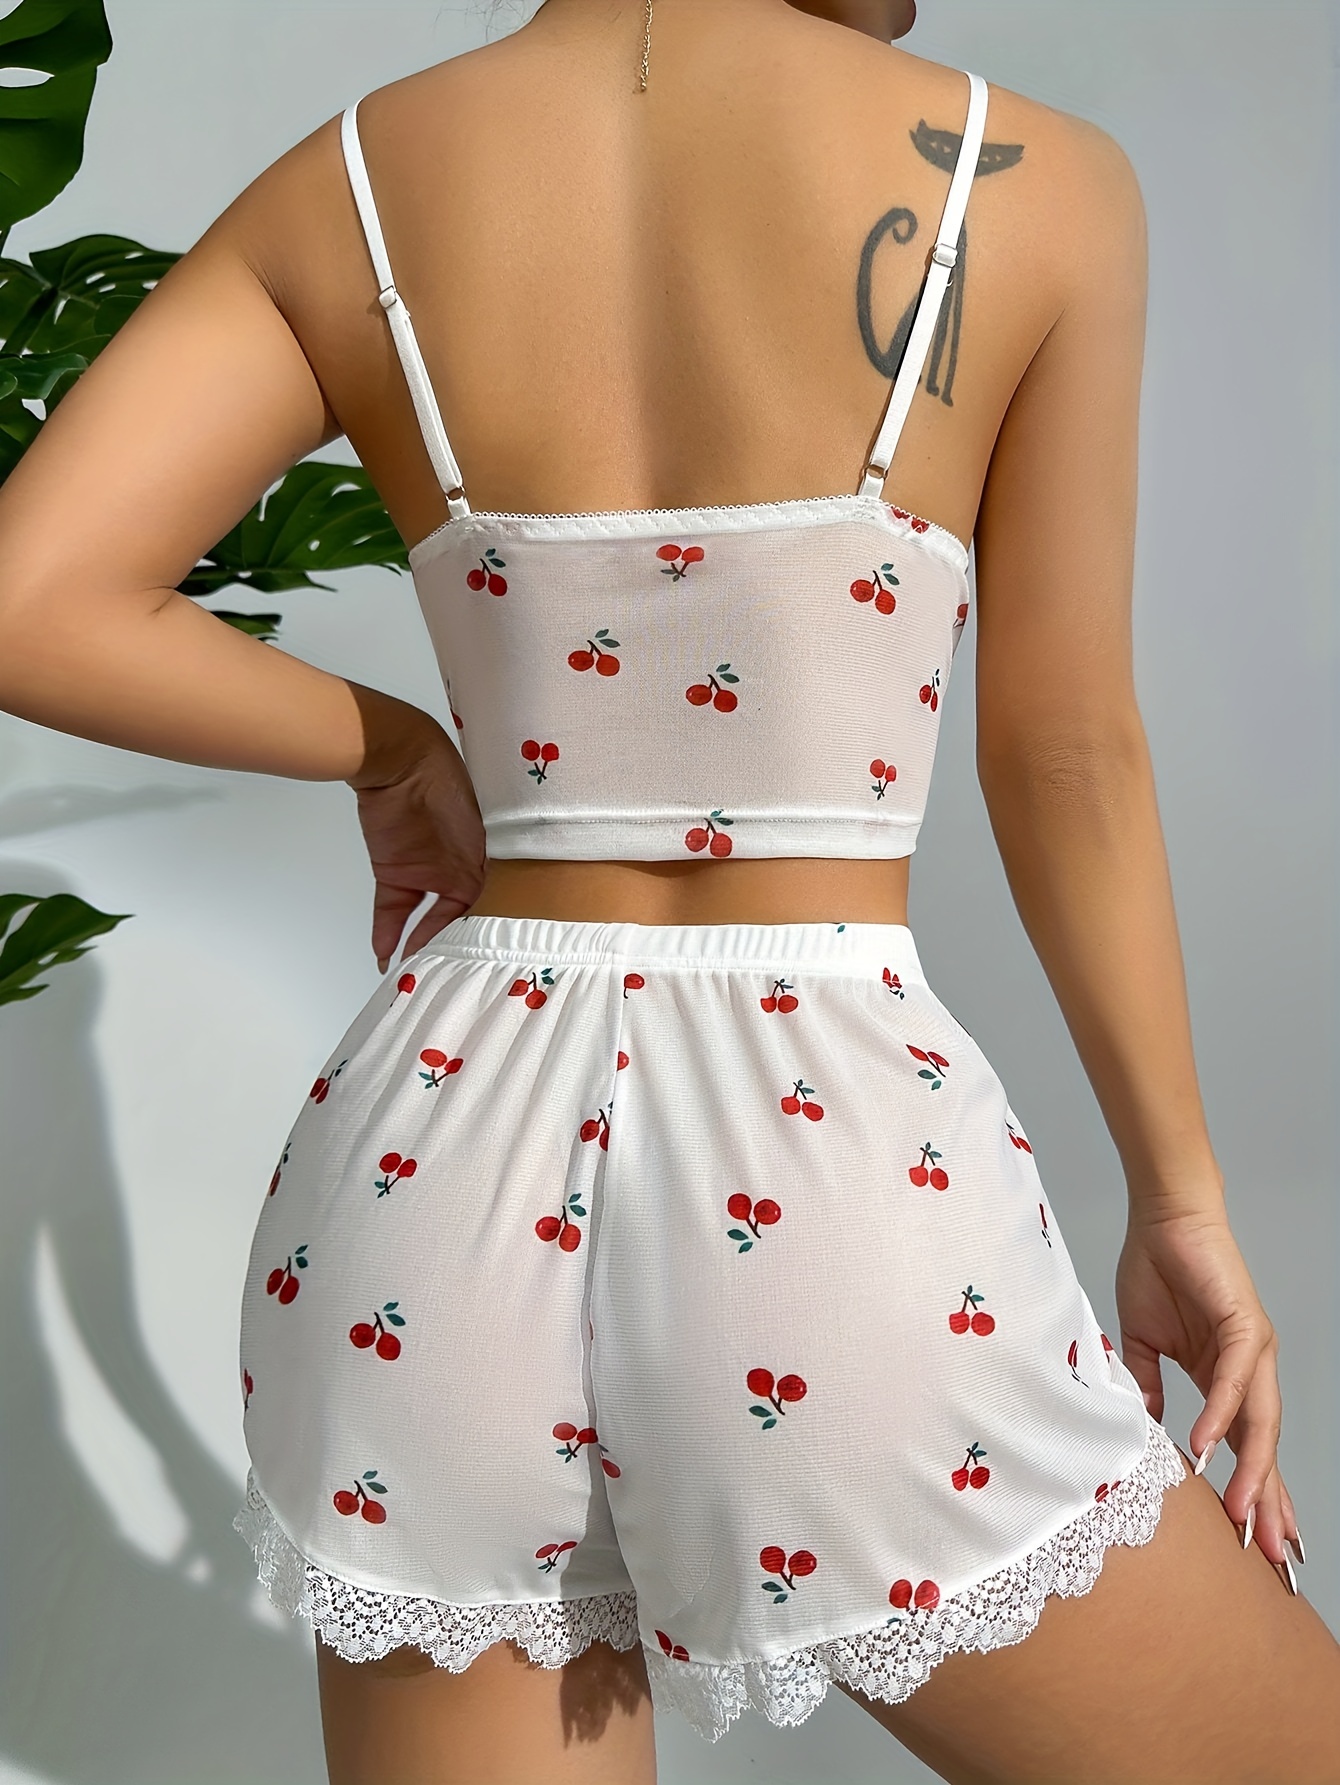 Cherry Print Mesh Lingerie Set, Cut Out Cami Top & Lace Trim Shorts,  Women's Sexy Lingerie & Underwear